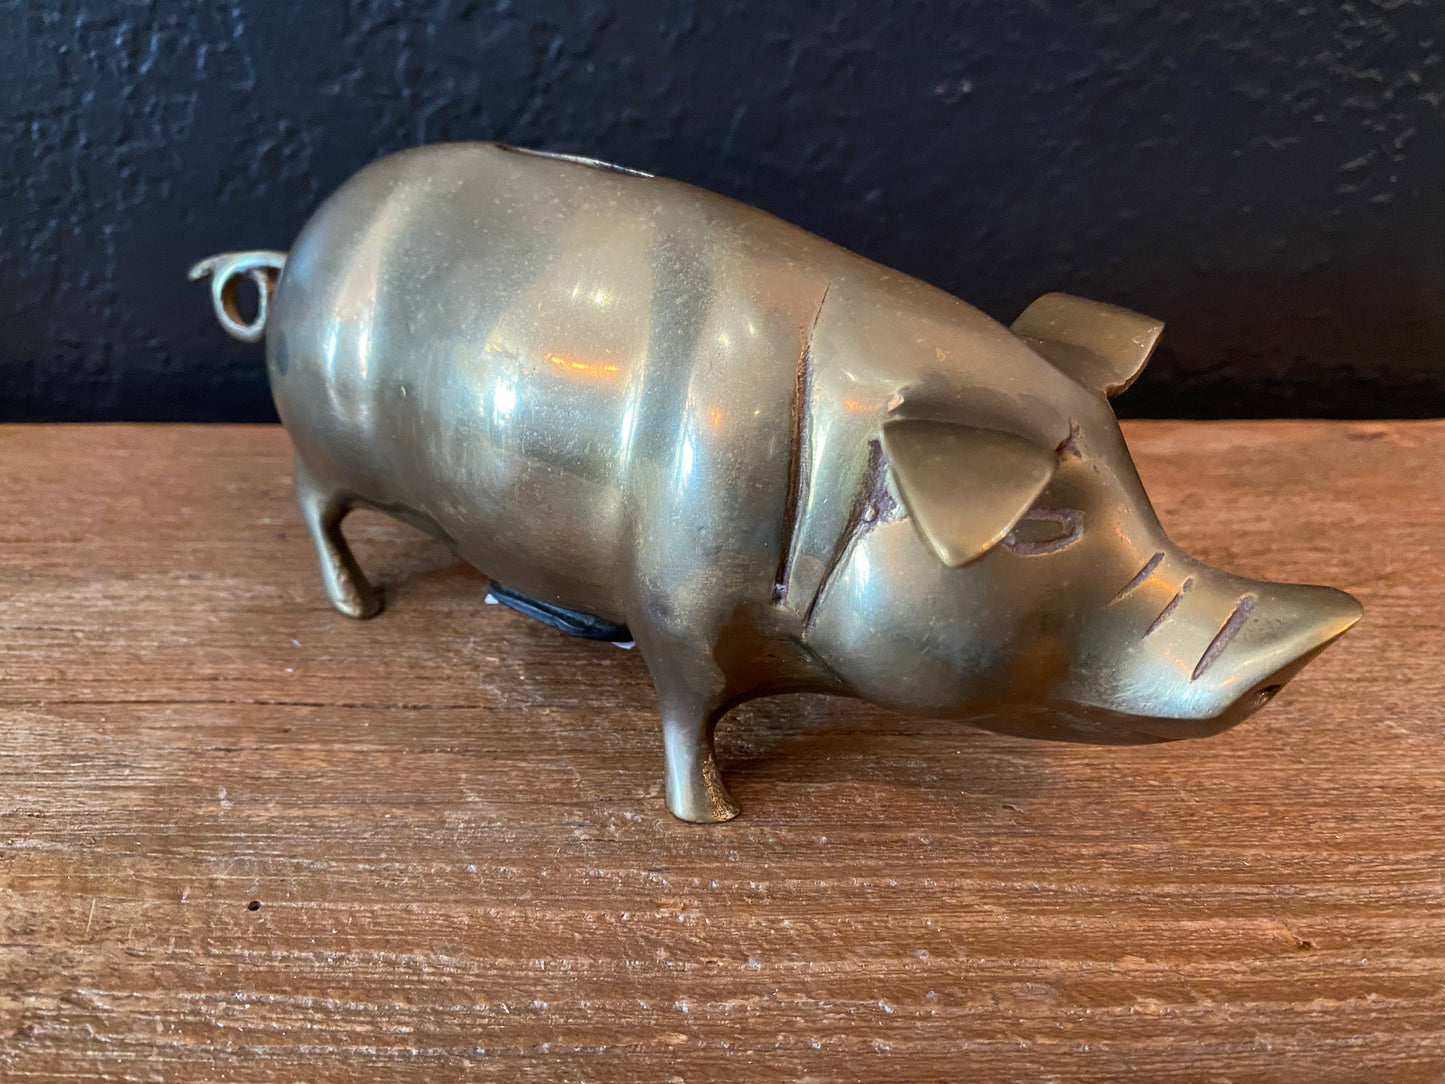 Brass Piggy Bank